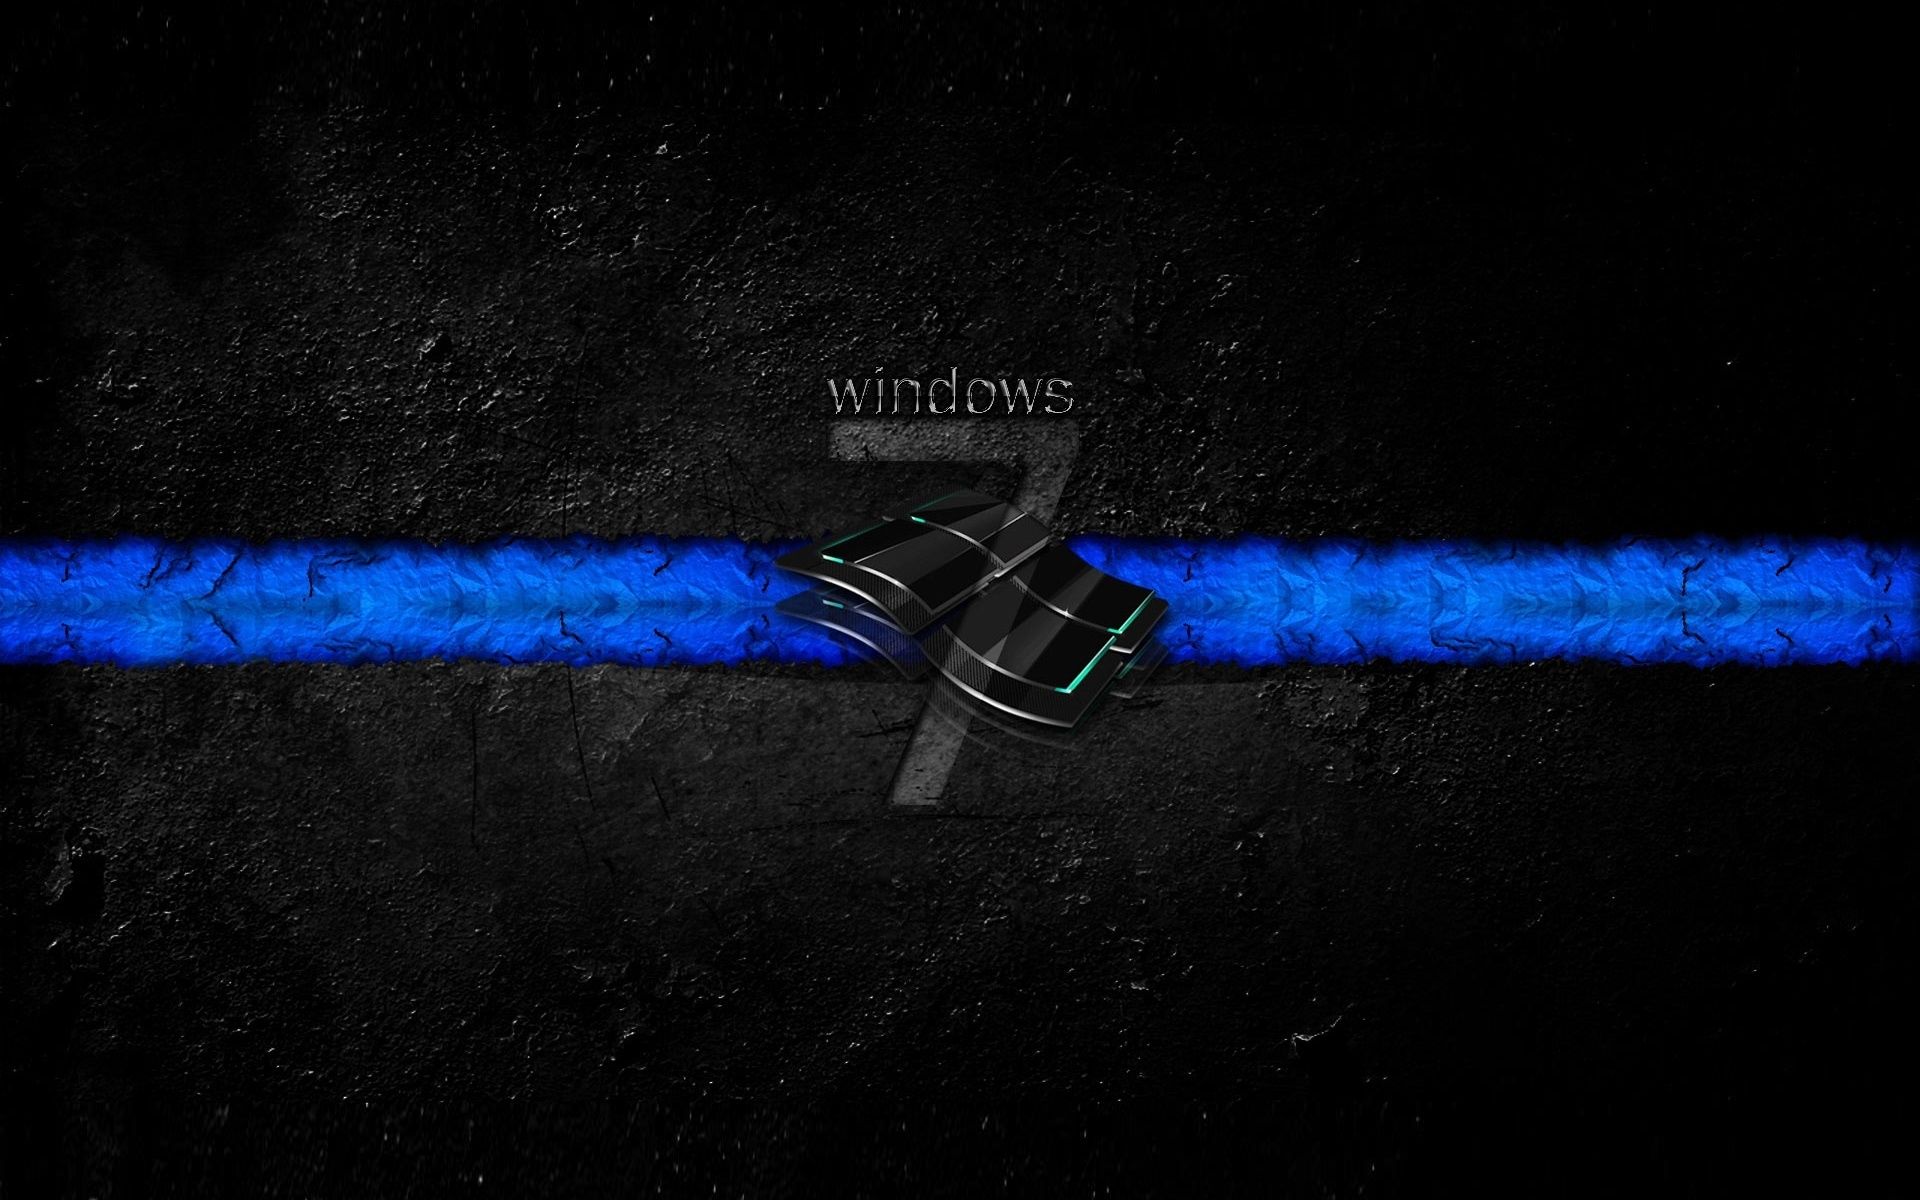 Wallpaper. Windows. photo. picture. blue striped, seven